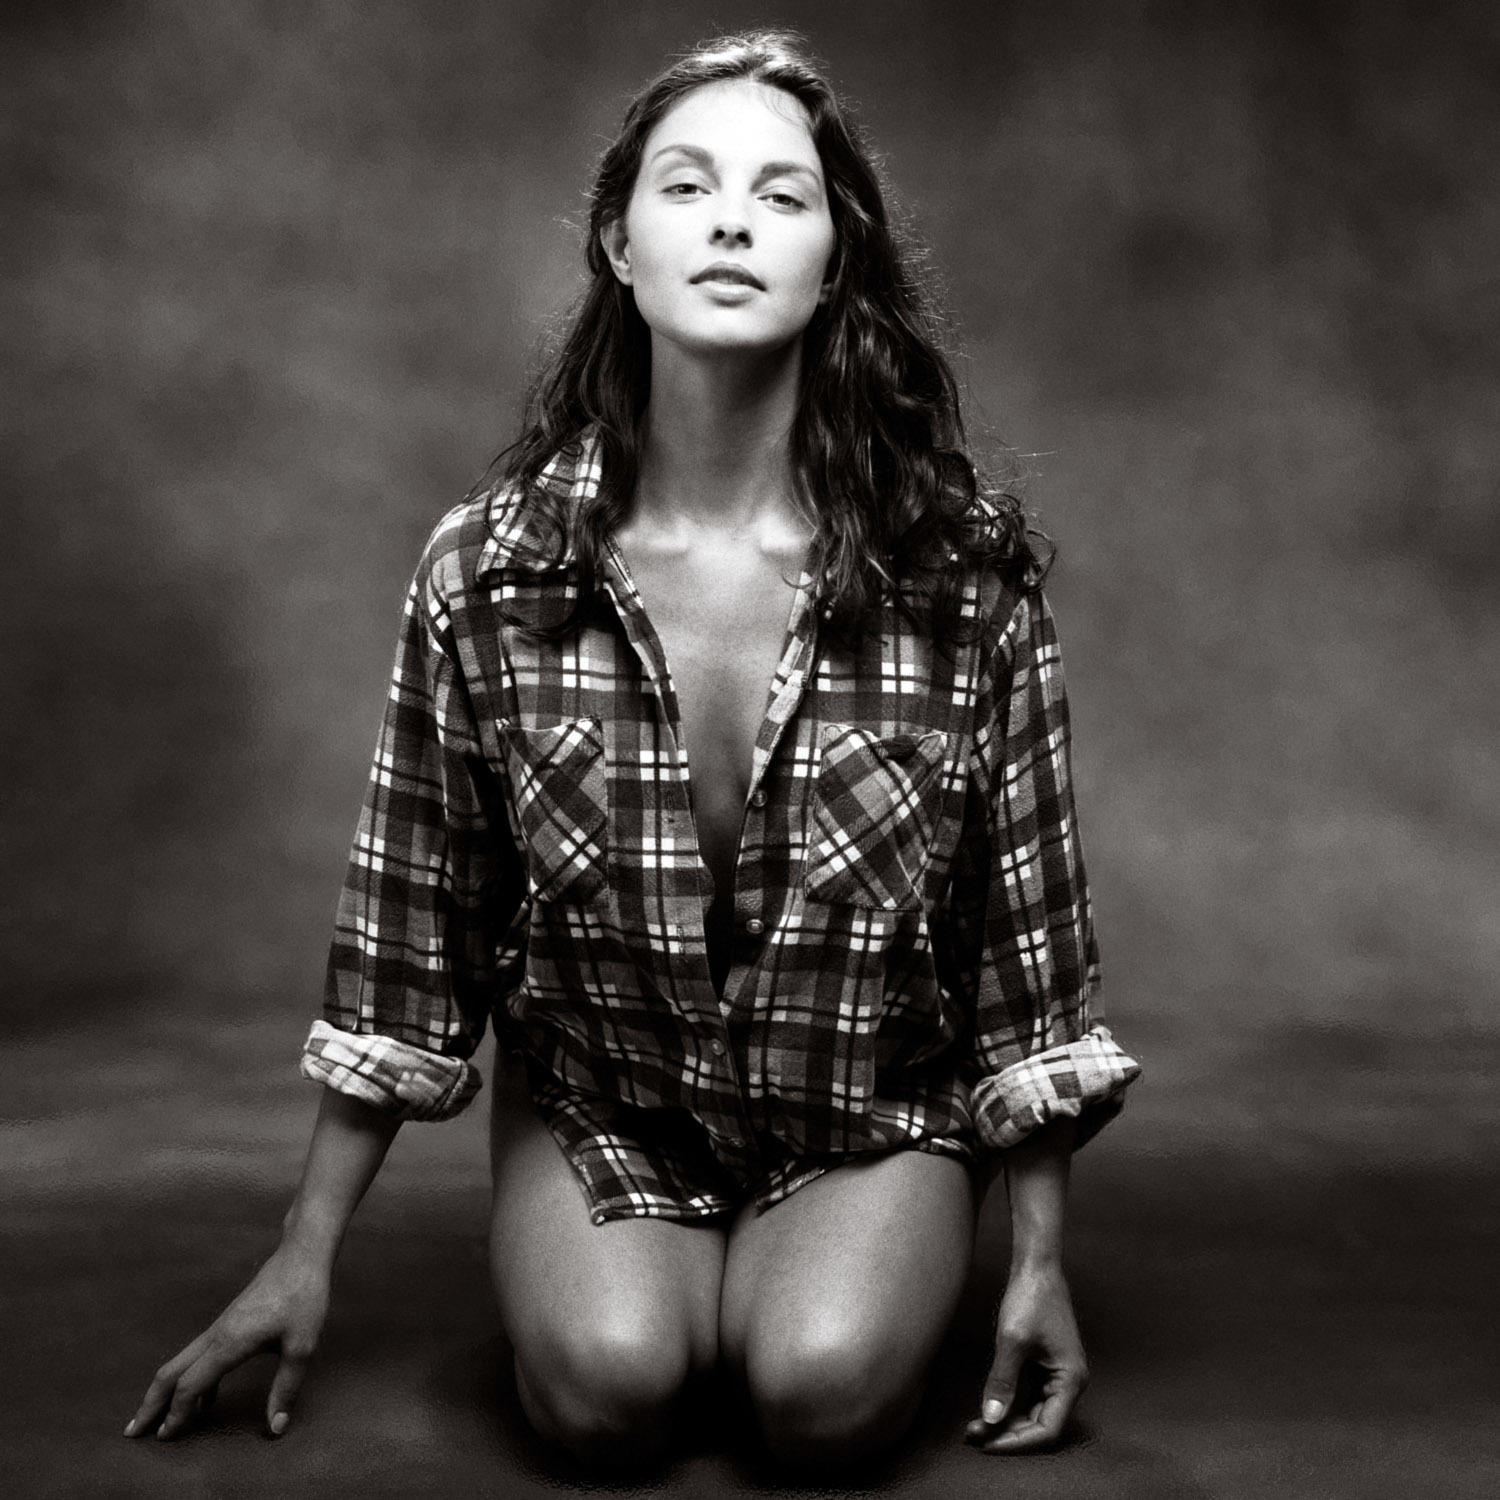 アシュレイ・ジャッド（Ashley Judd）・・・美女落ち穂拾い200419_e0042361_18351904.jpg